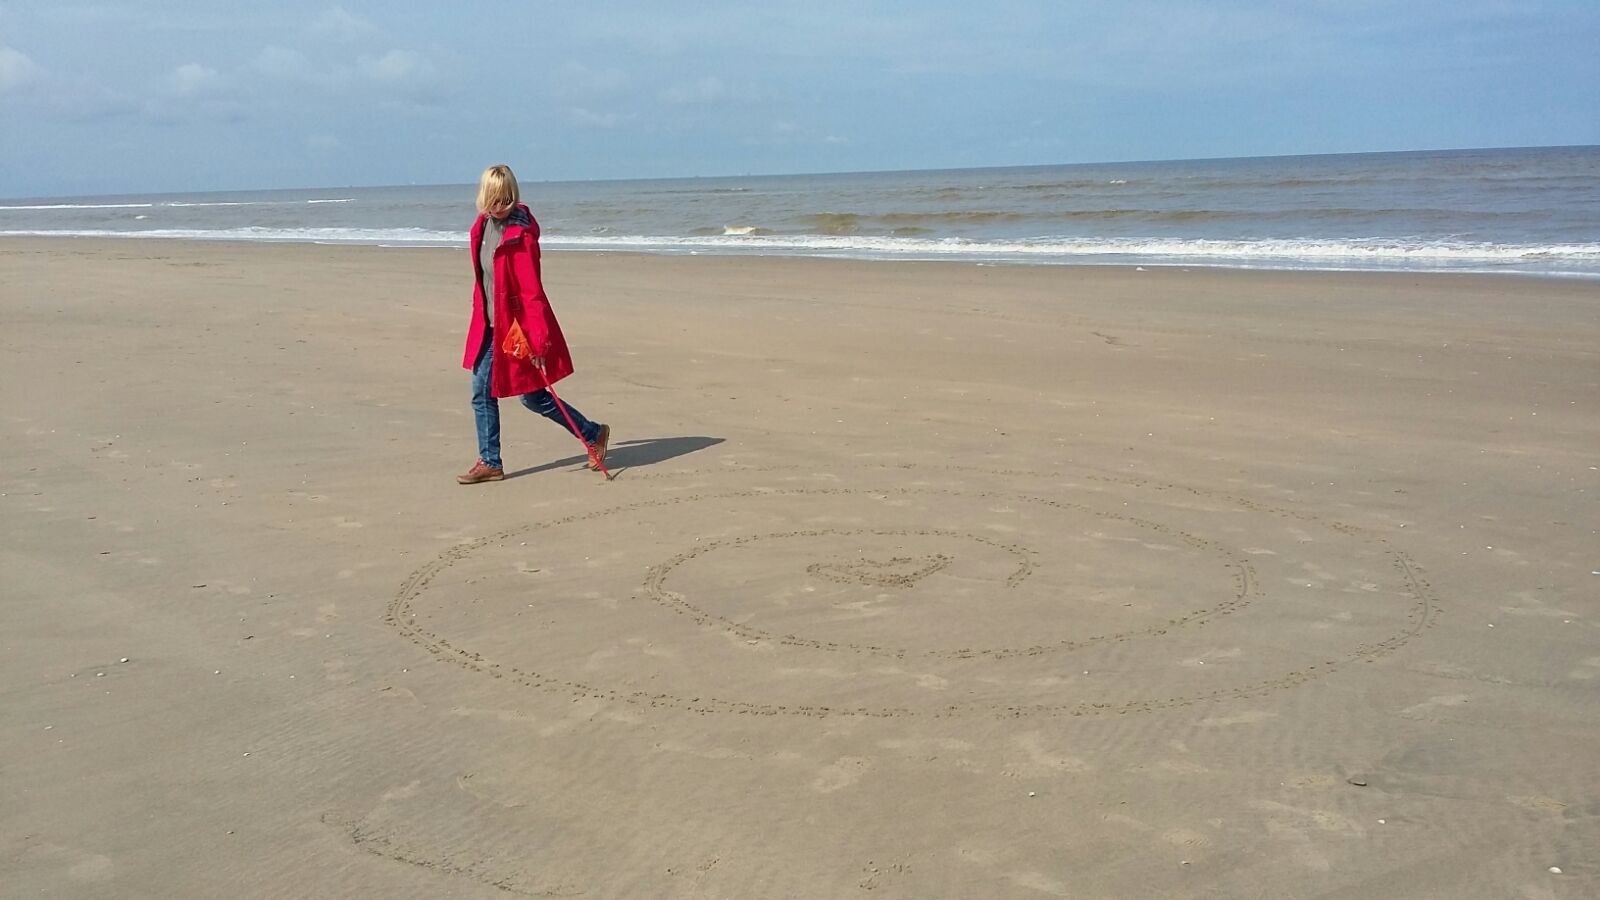  Labyrint op het strand: Buiten de weg naar binnen vinden